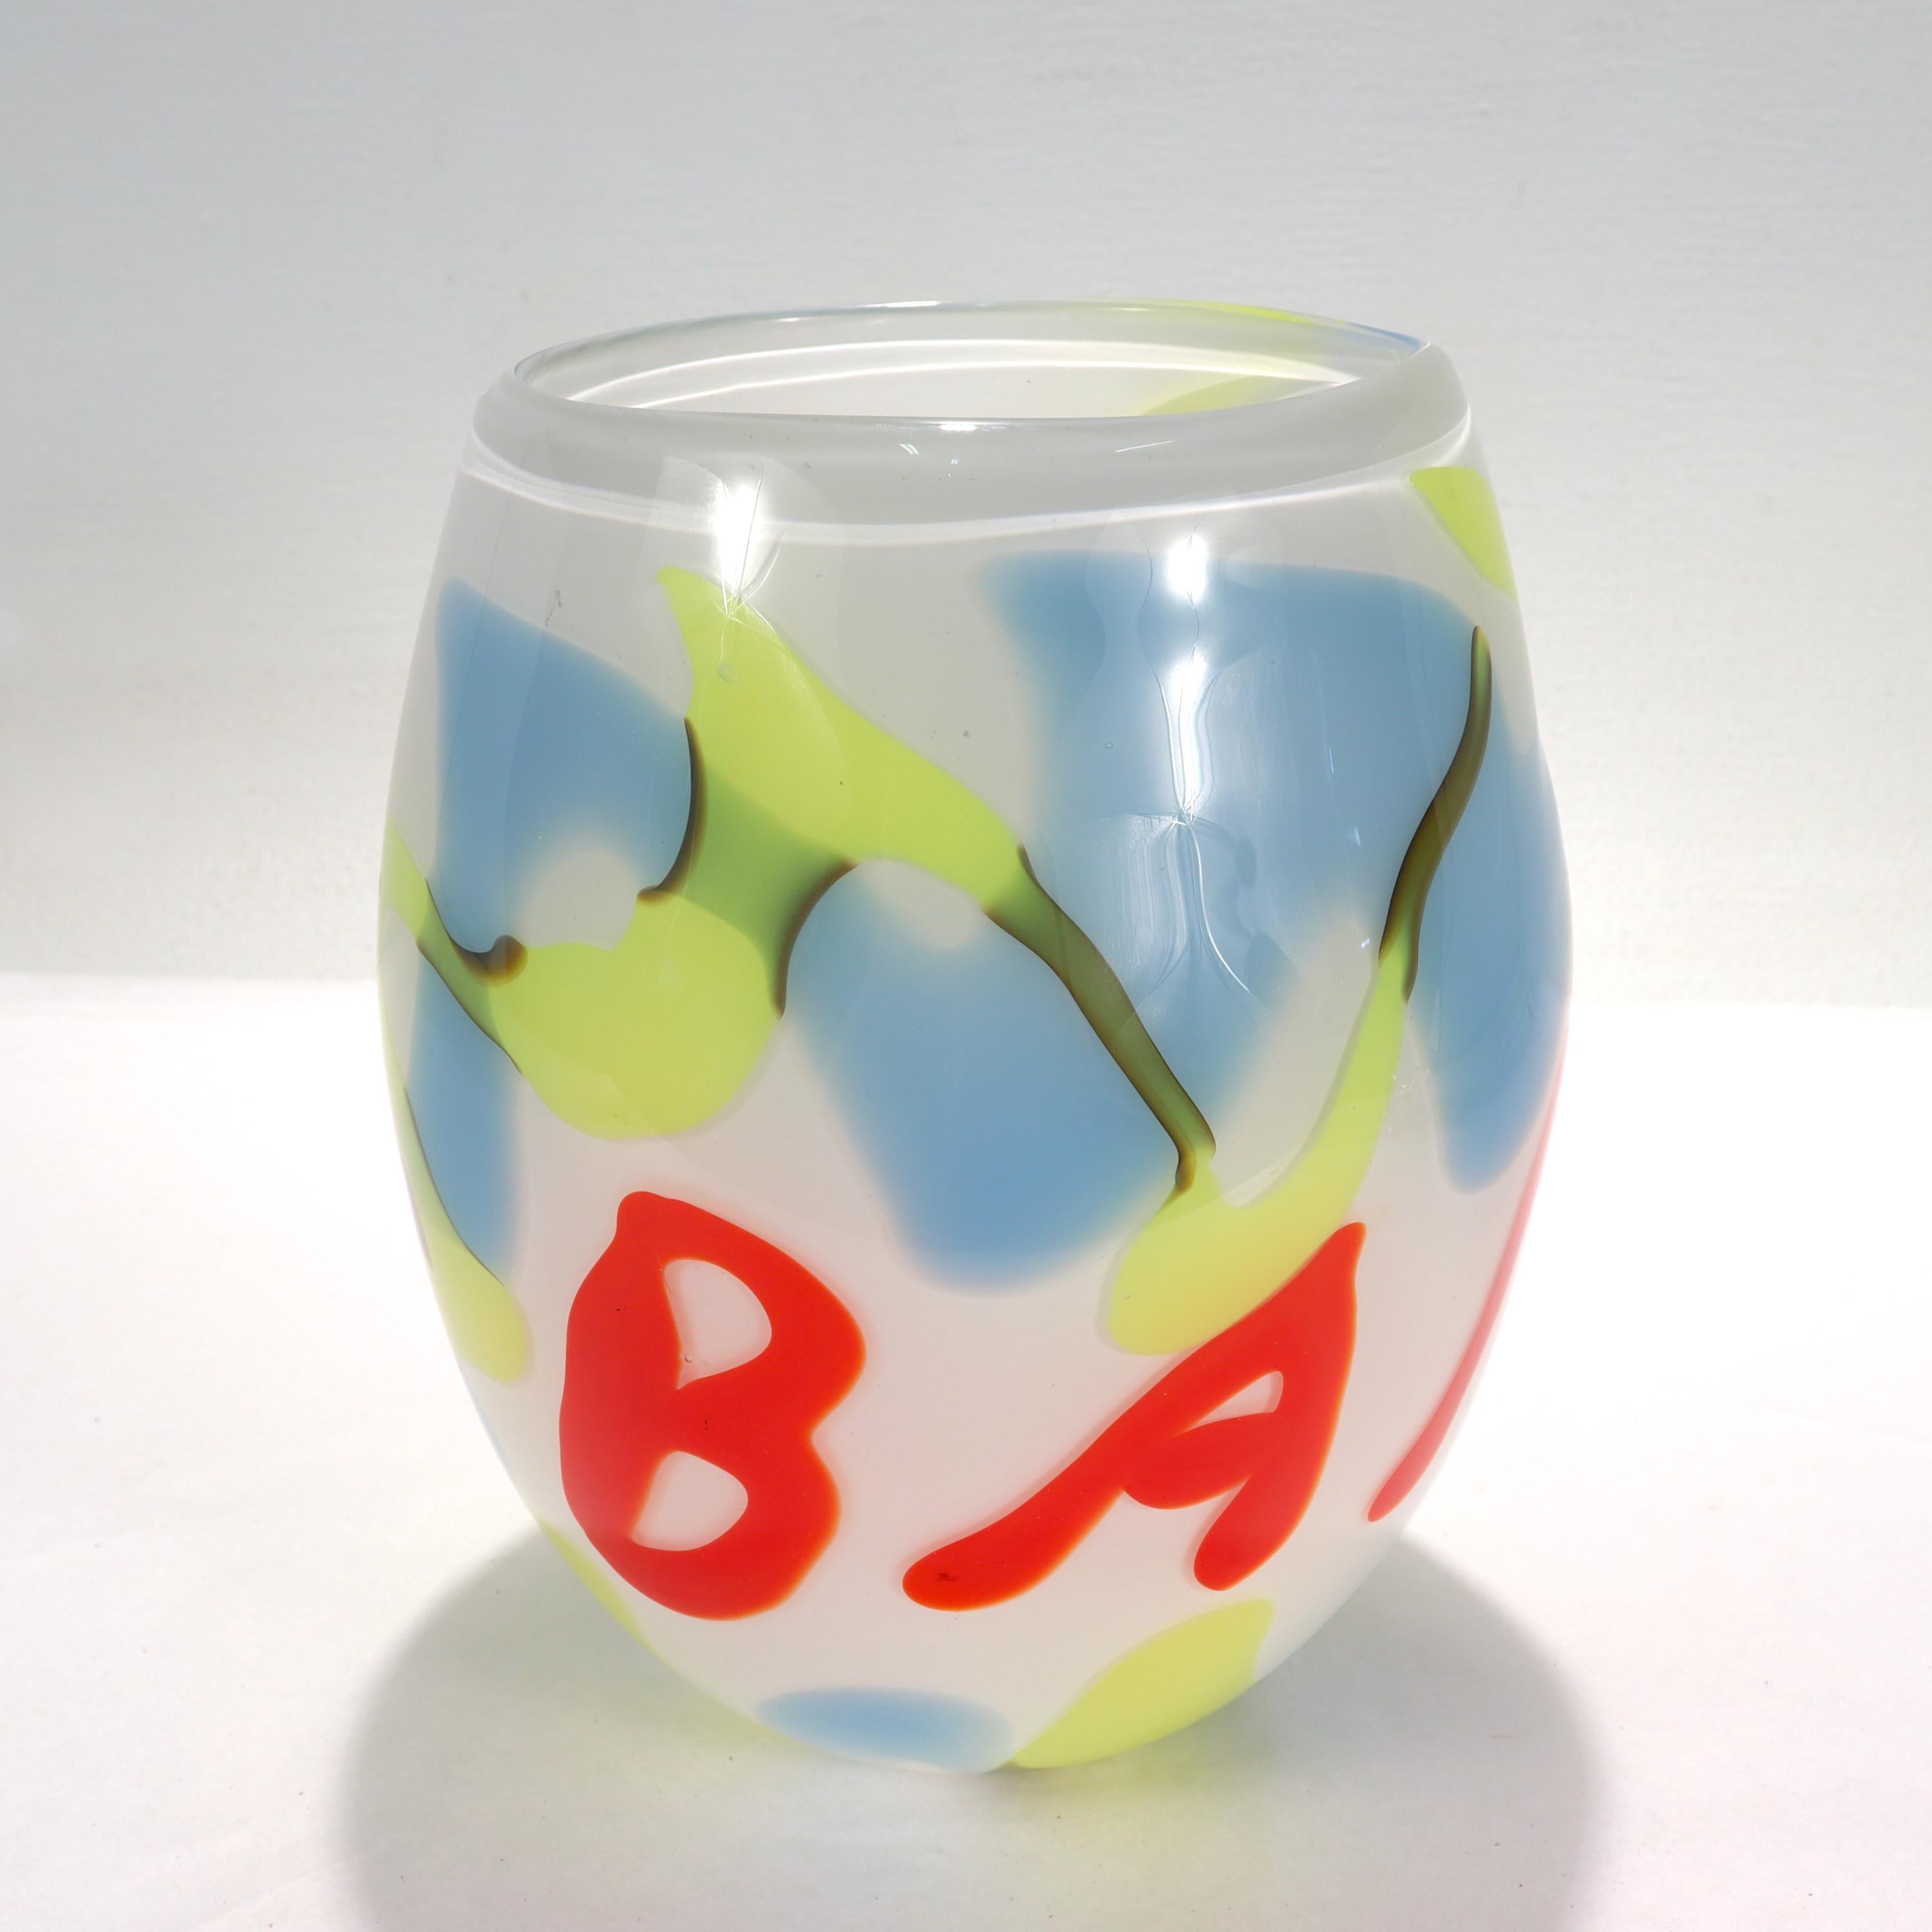 Eine schöne Pop-Art-Glasvase. 

Dekoriert mit einem roten 